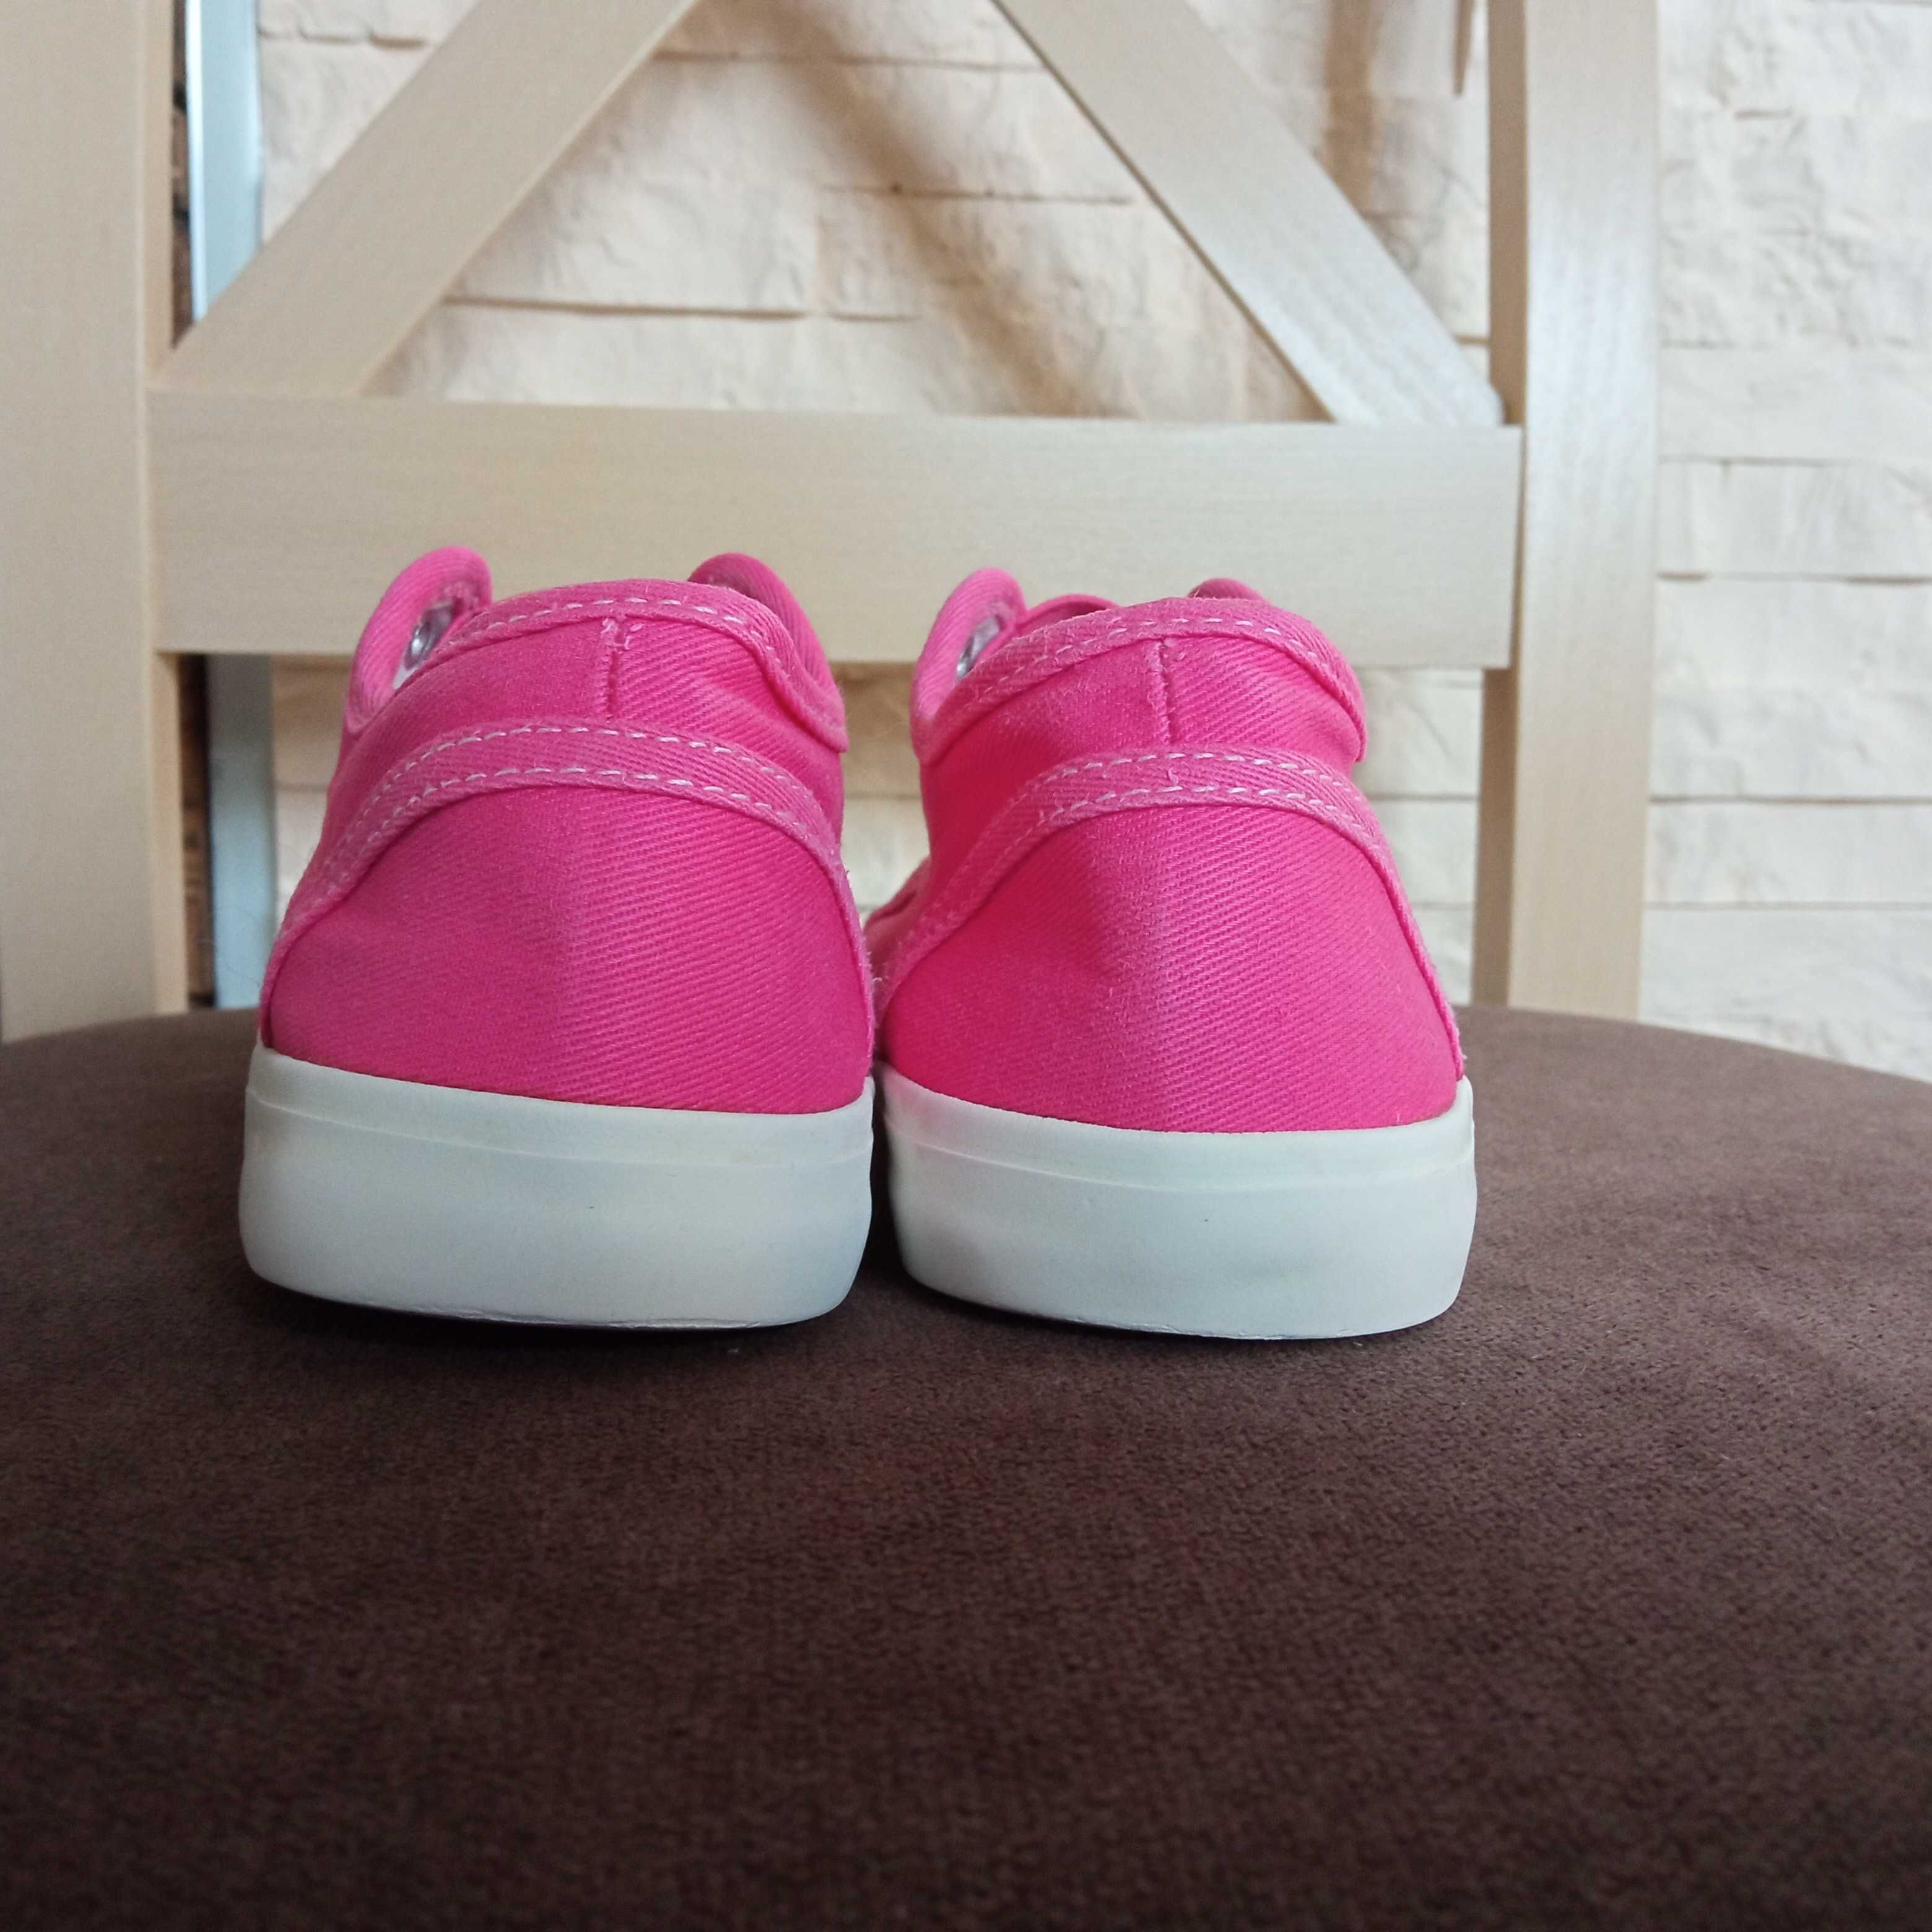 Trampki wsuwane slip on 28 tenisówki różowe John Lewis buty dziewczęce